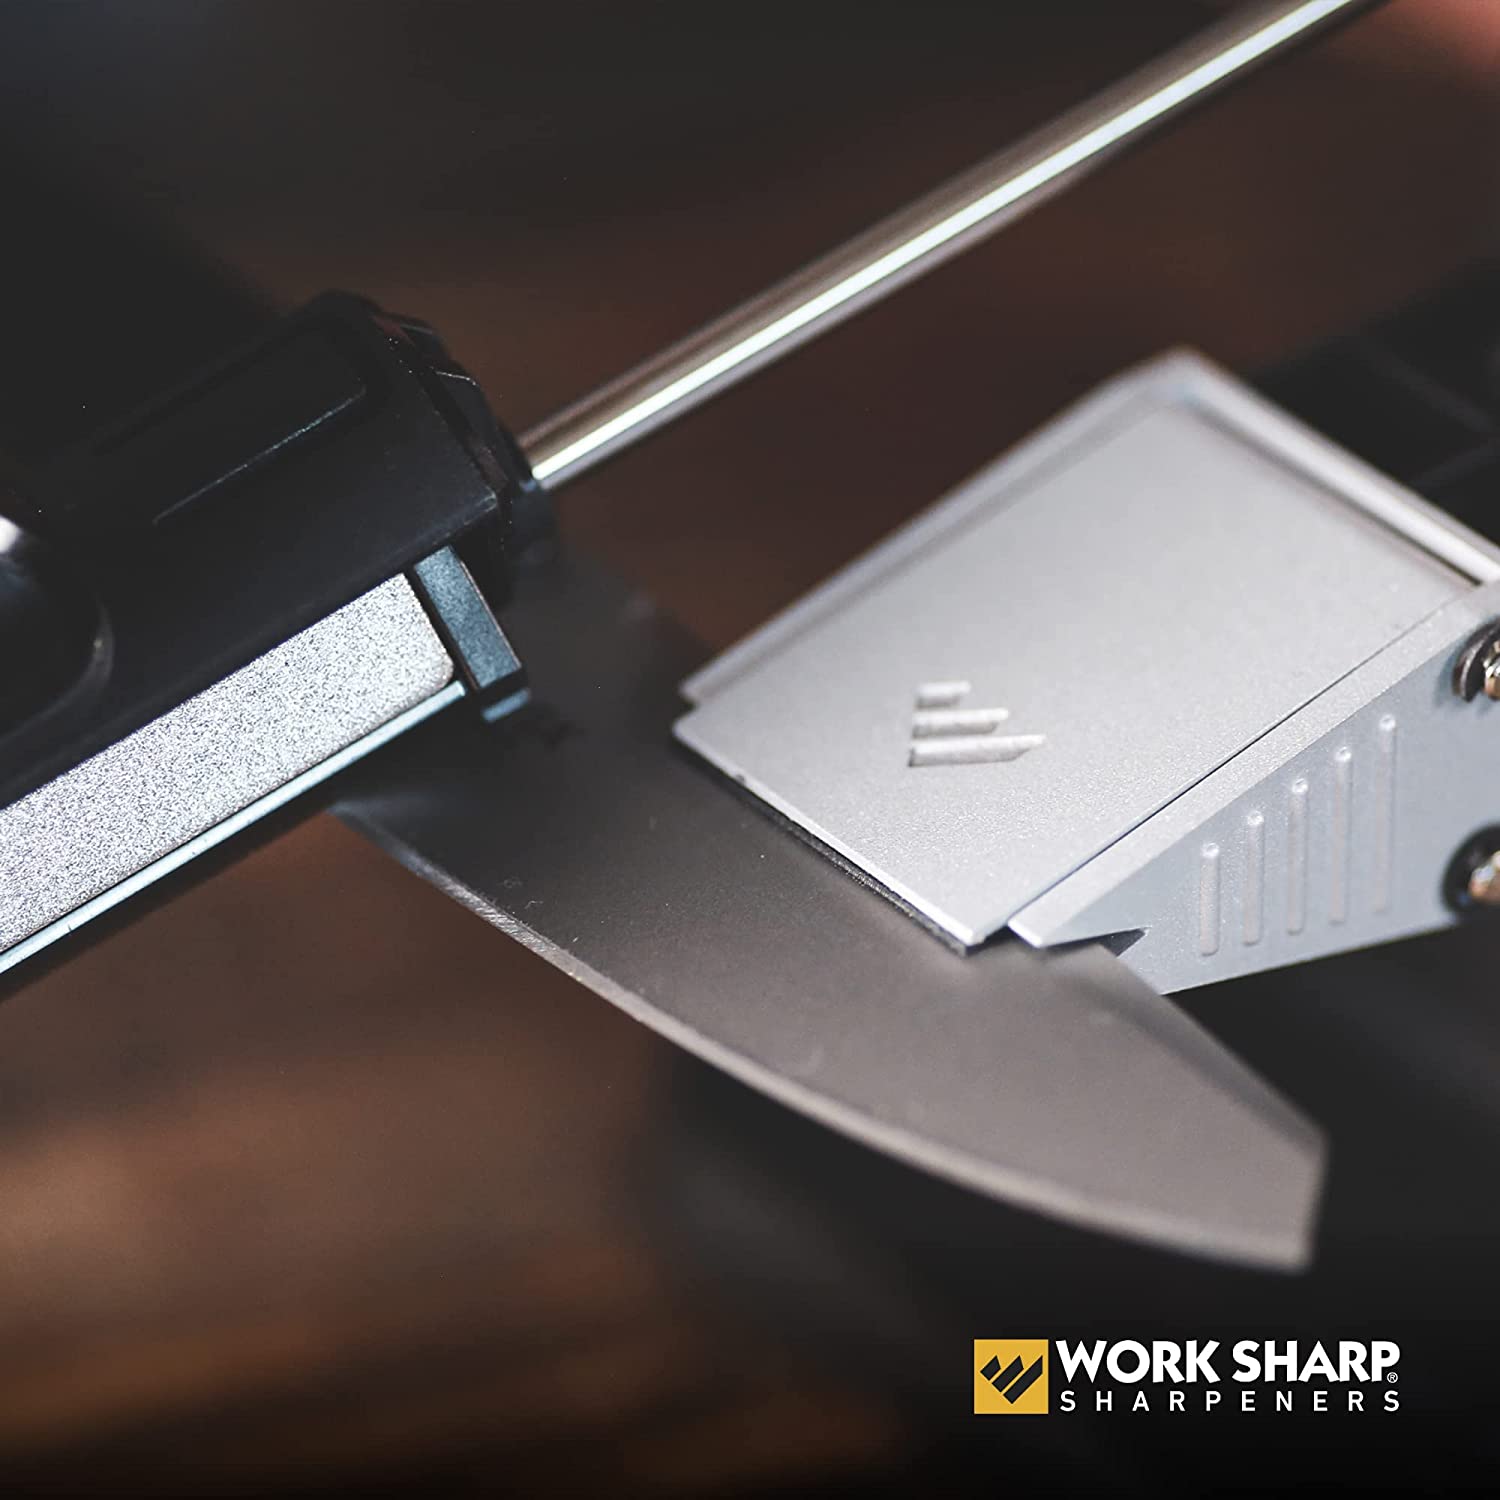 Kit for Precision Adjust Knife Sharpener, Set of 7 Abrasives and